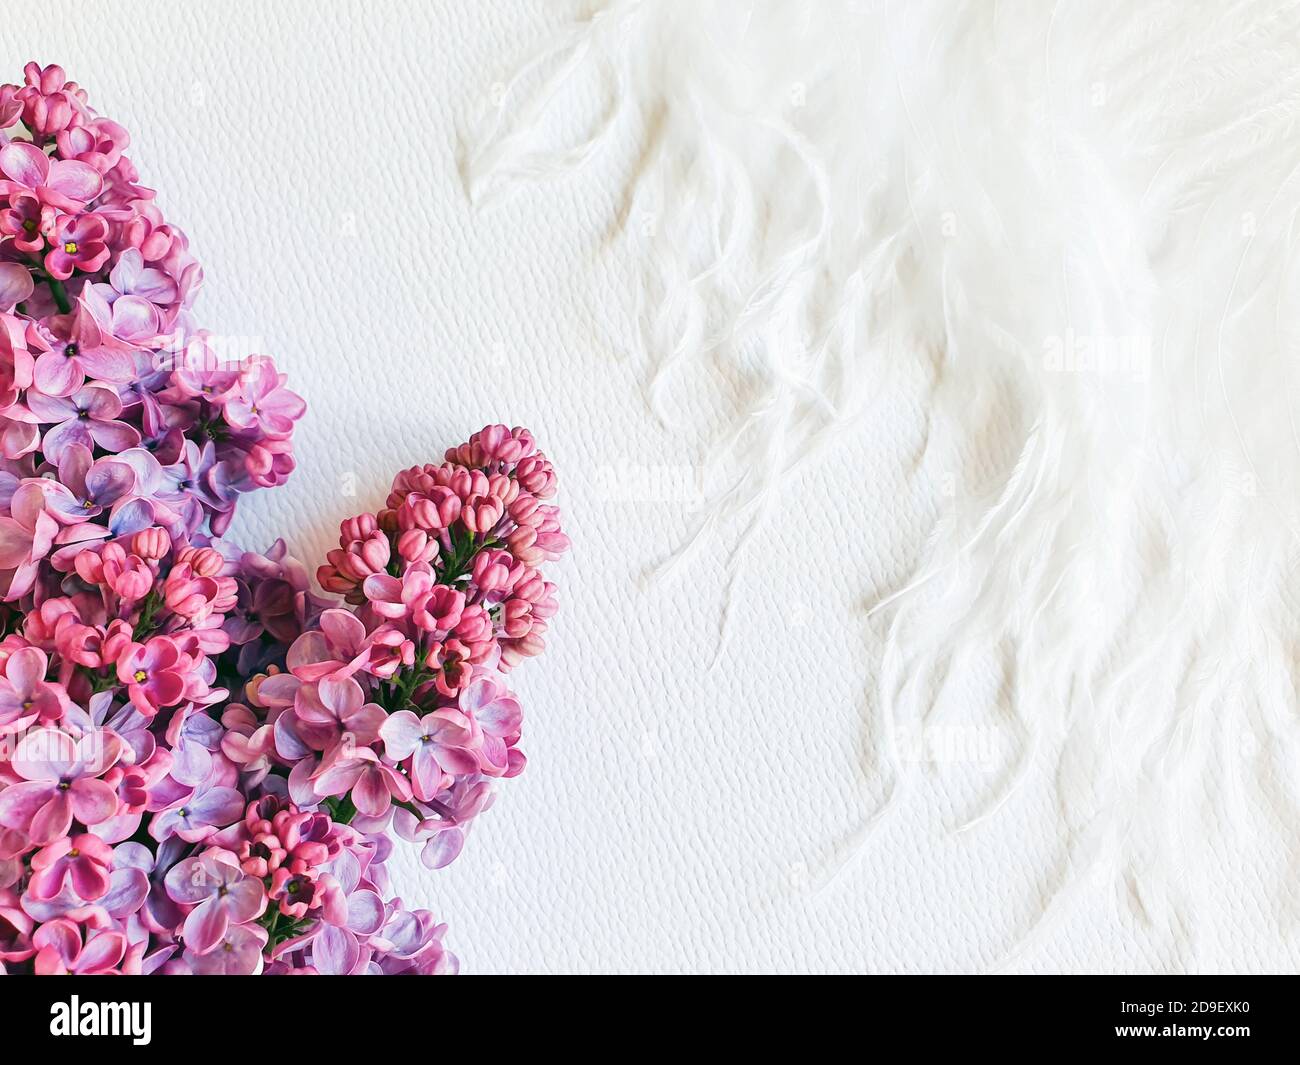 Flieder Blumen und weiße Feder auf einem weißen strukturierten Hintergrund. Blumenrahmen, freier Platz für Ihren Text oder Ihr Produkt. Zärtlichkeit Stockfoto